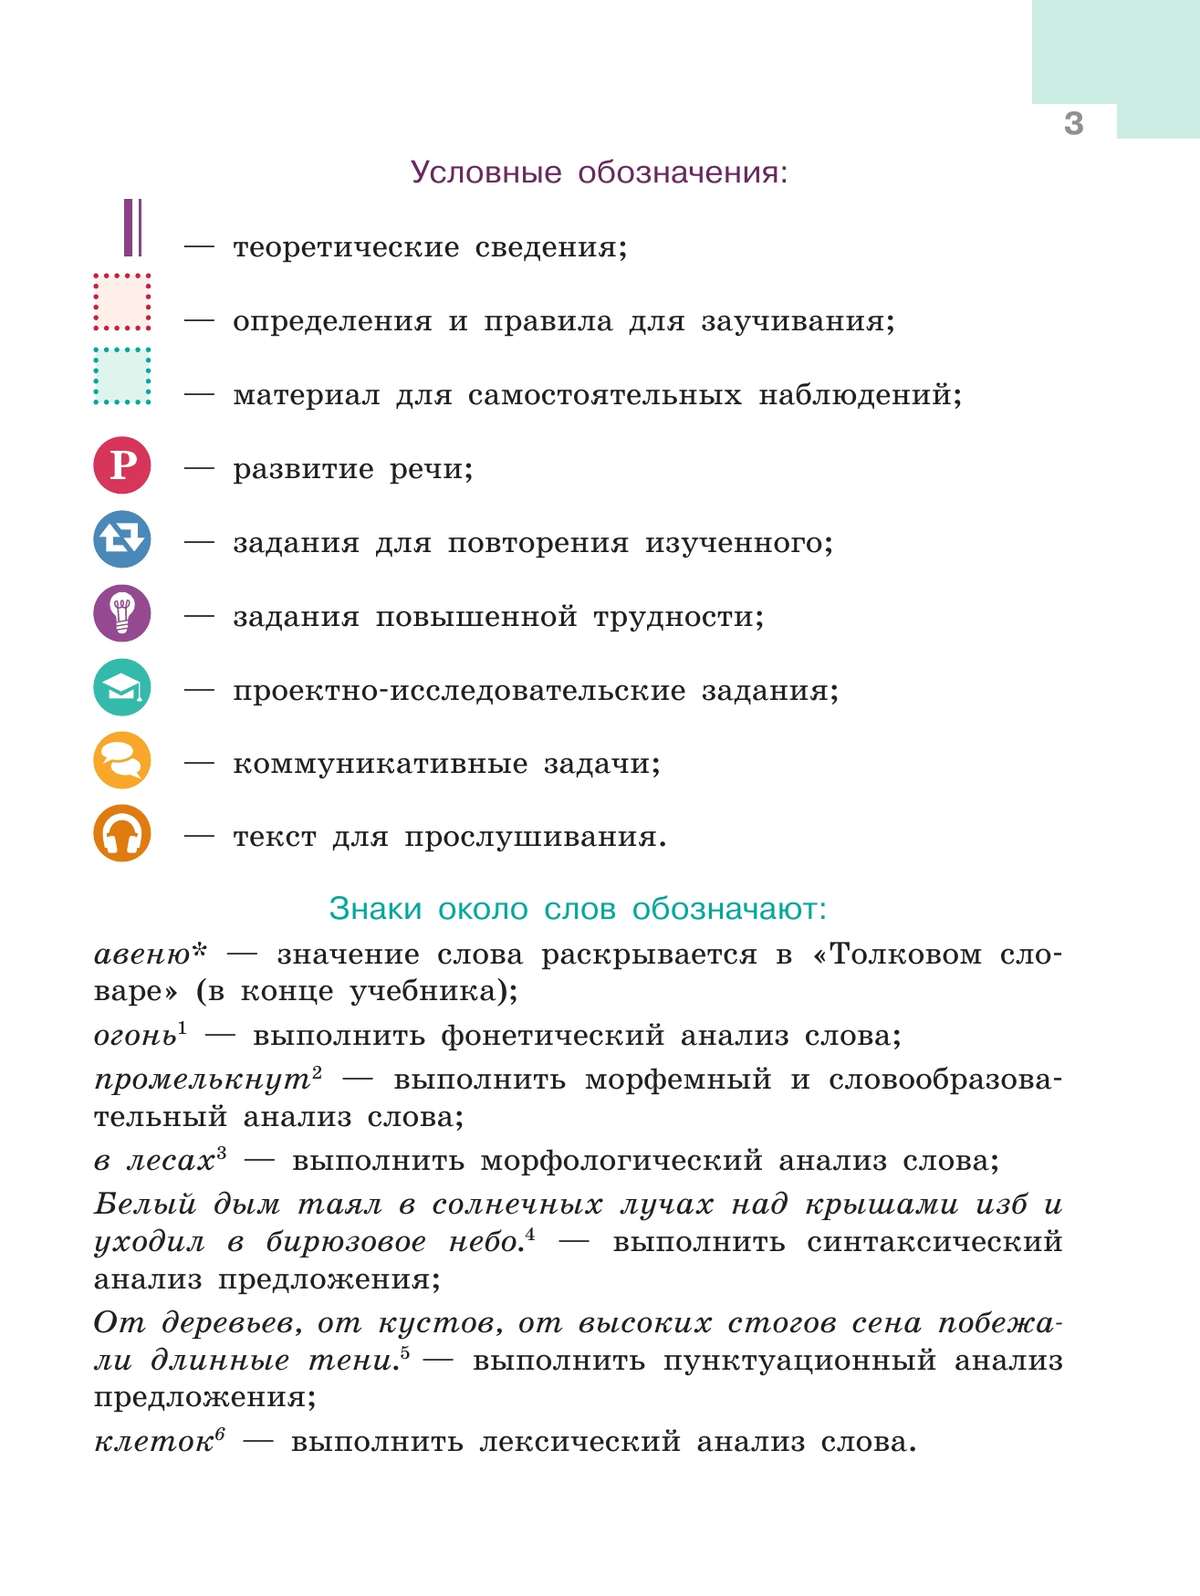 Русский язык. 6 класс. В 2 ч. Ч. 2 2